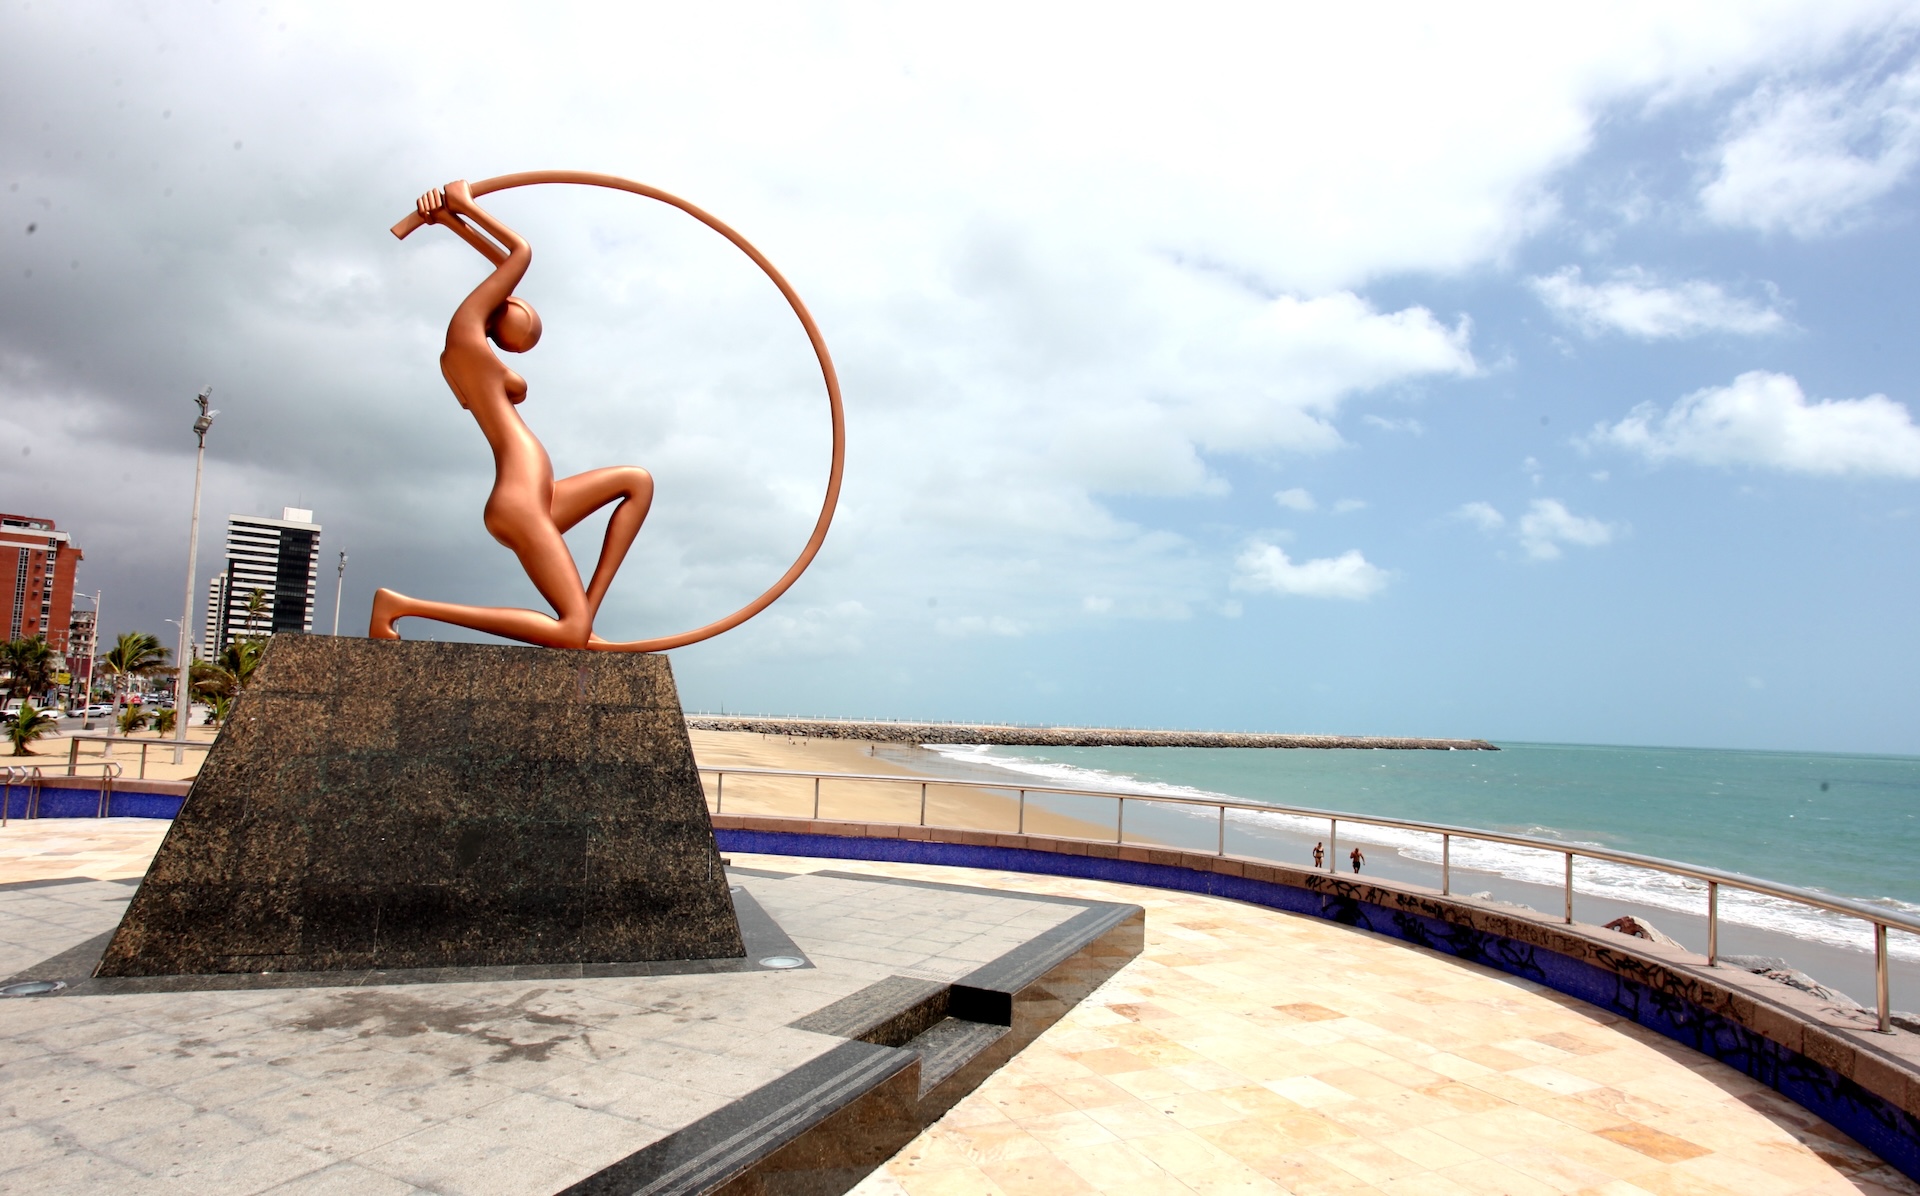 La Estatua de Iracema Guardiã es una creación del artista cearense Zenon da Cunha Mendes Barreto, en homenaje a la literatura de José de Alencar, también cearense. La estatua, inaugurada en 1995, está ubicada en la playa de Iracema. (Foto: Divulgación/SetFor)